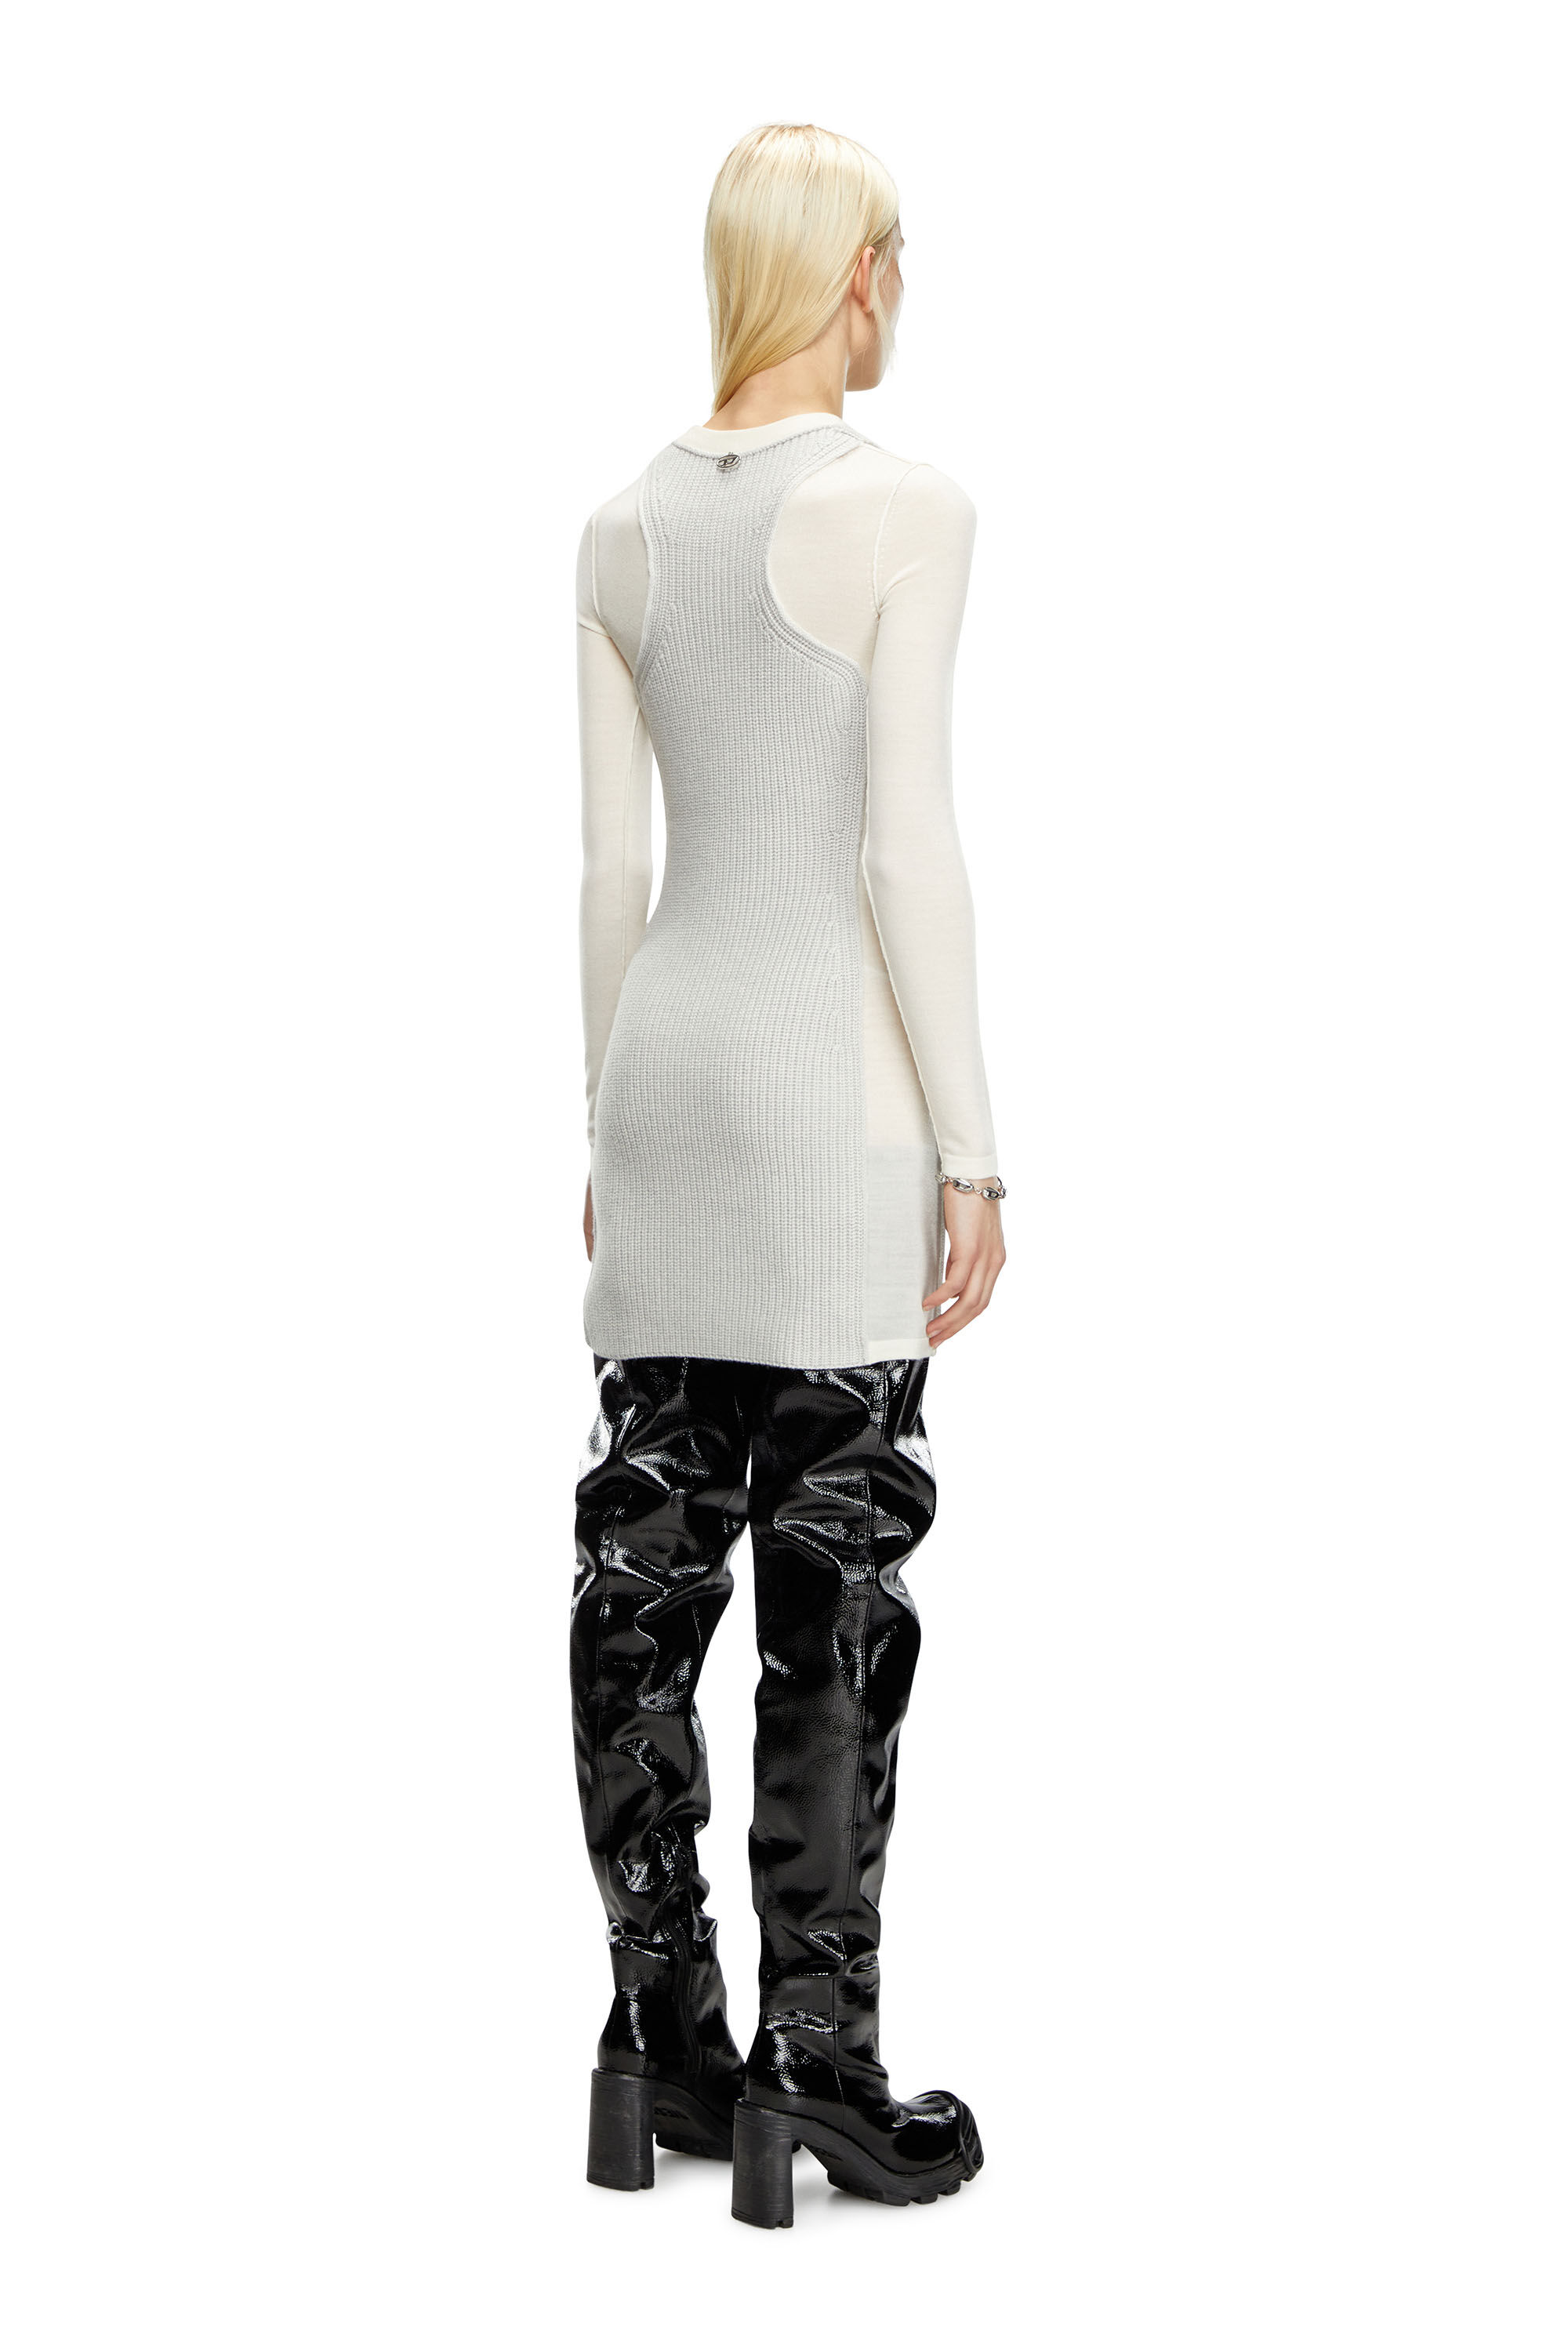 Diesel - M-ARENA, Mujer Vestido corto de punto con efecto de capas in Blanco - Image 3